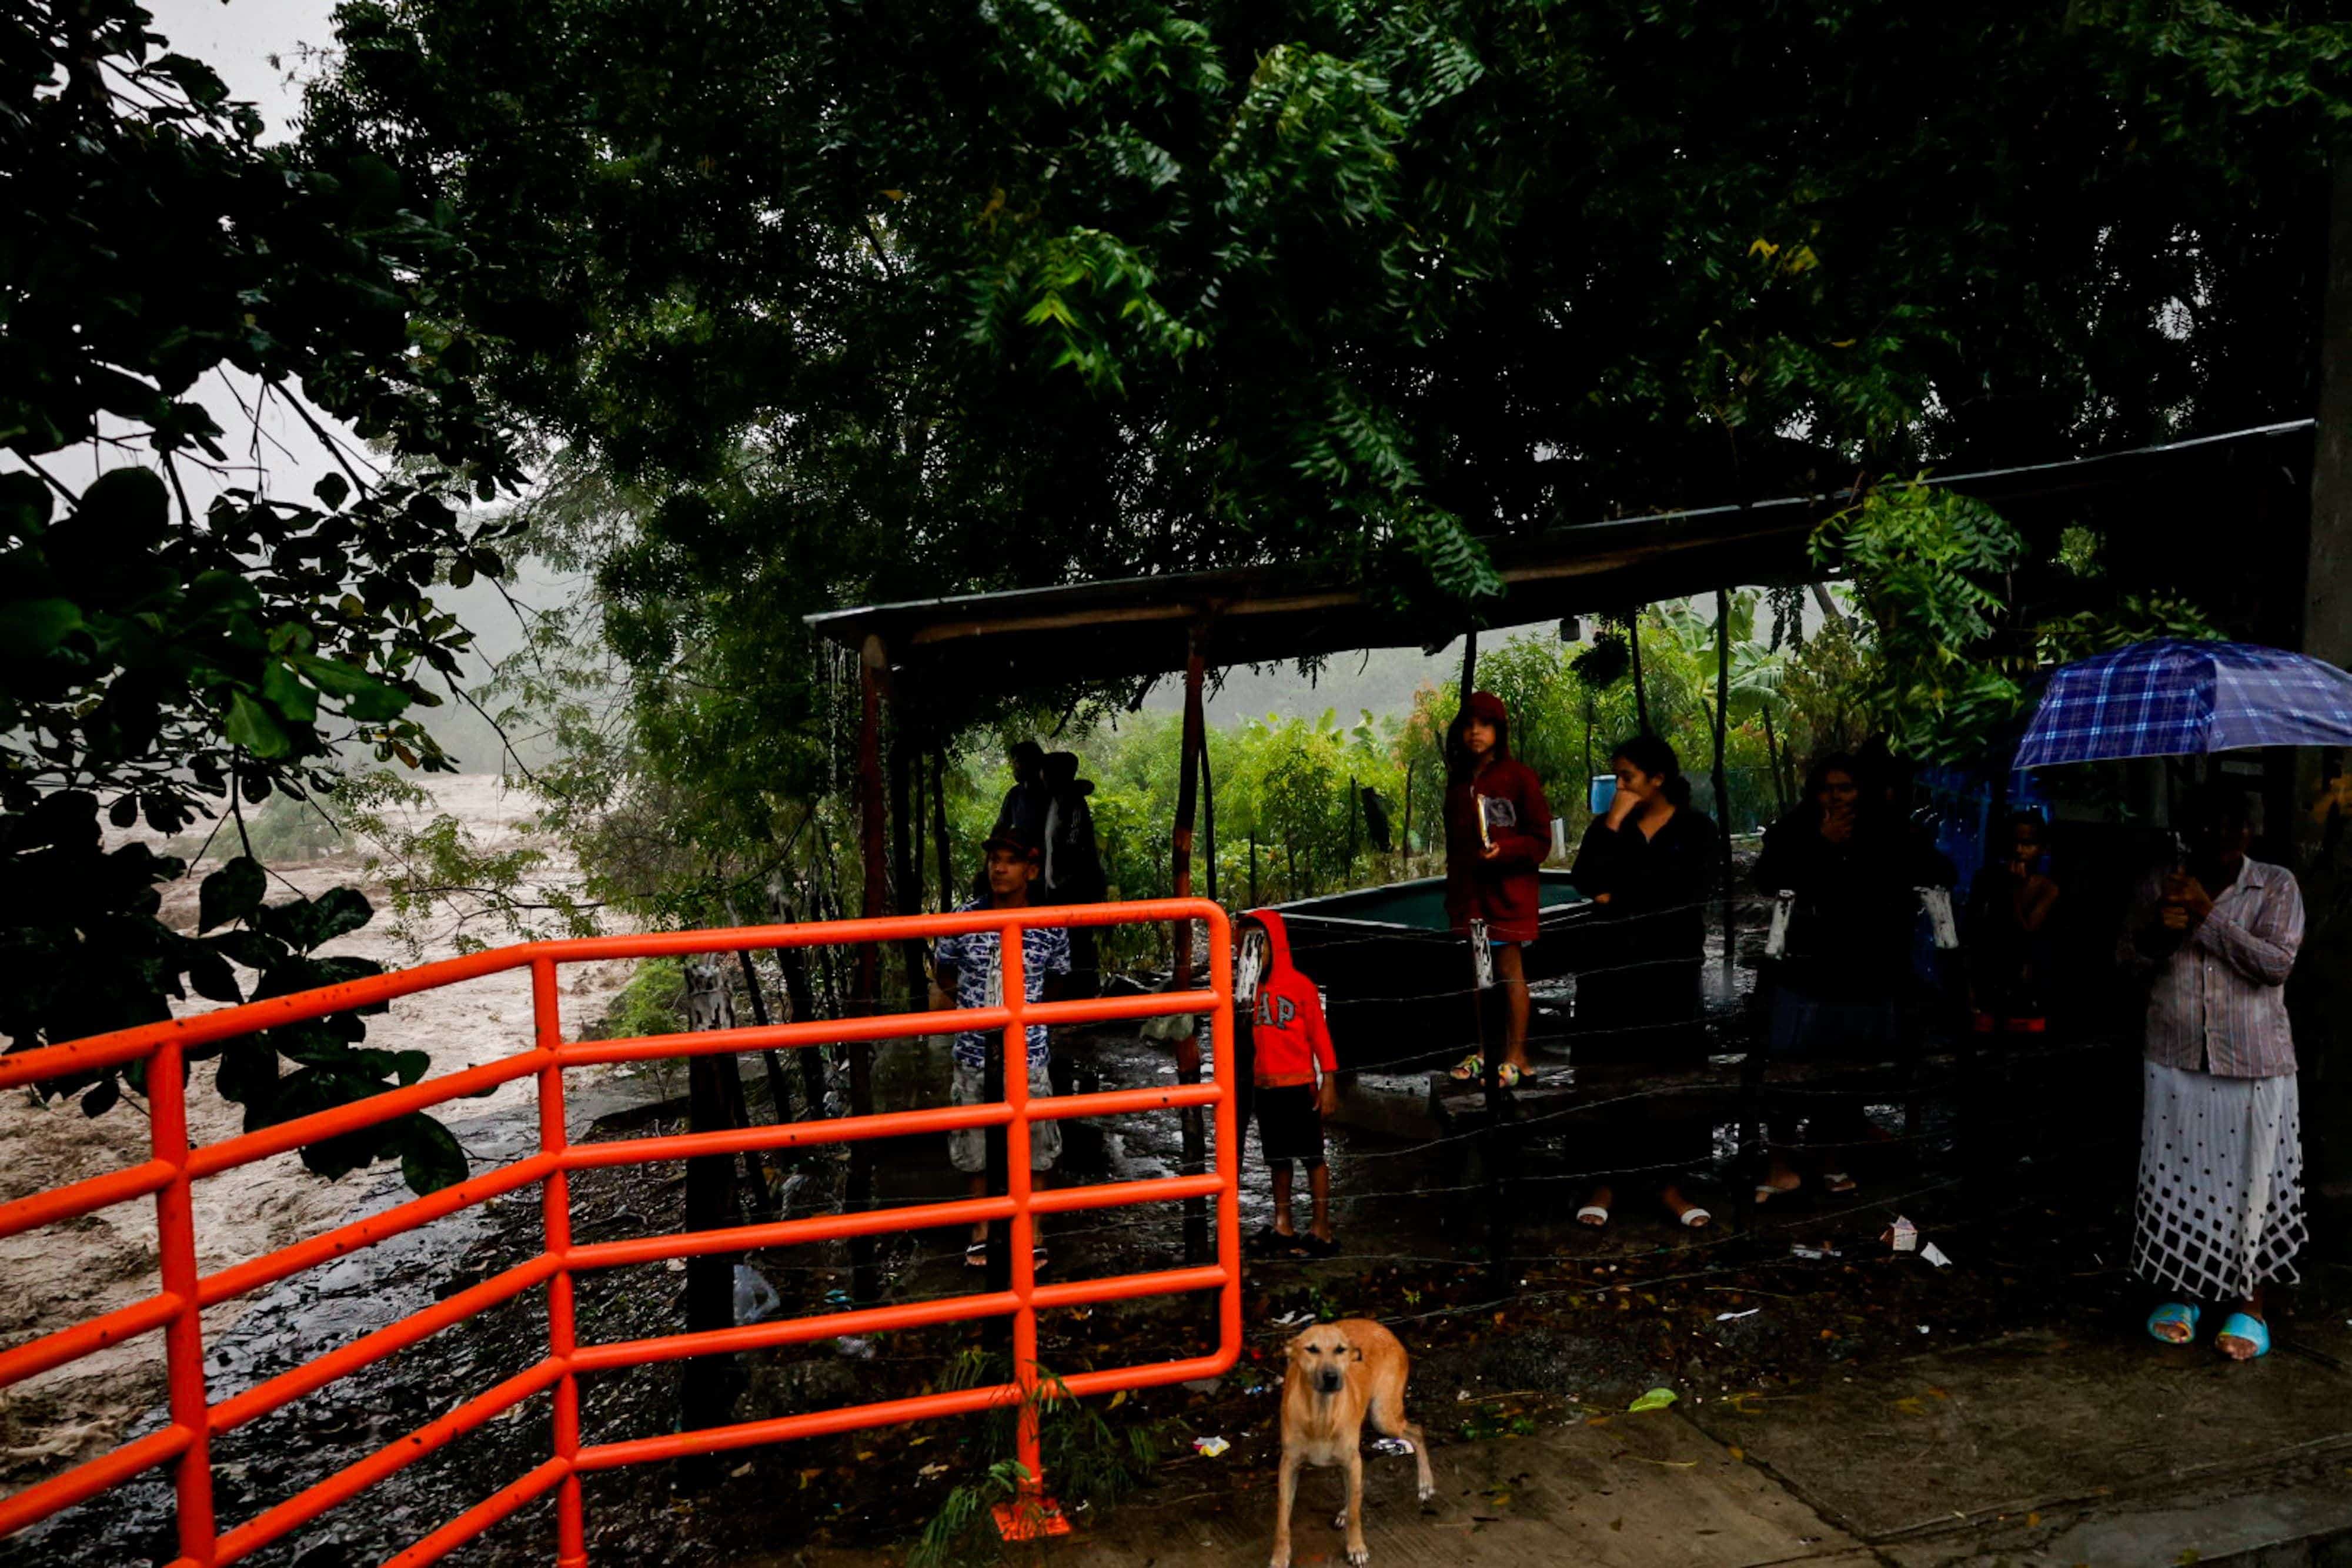 Familias contemplan la inusual fuerza del agua en Arroyo Blanco.